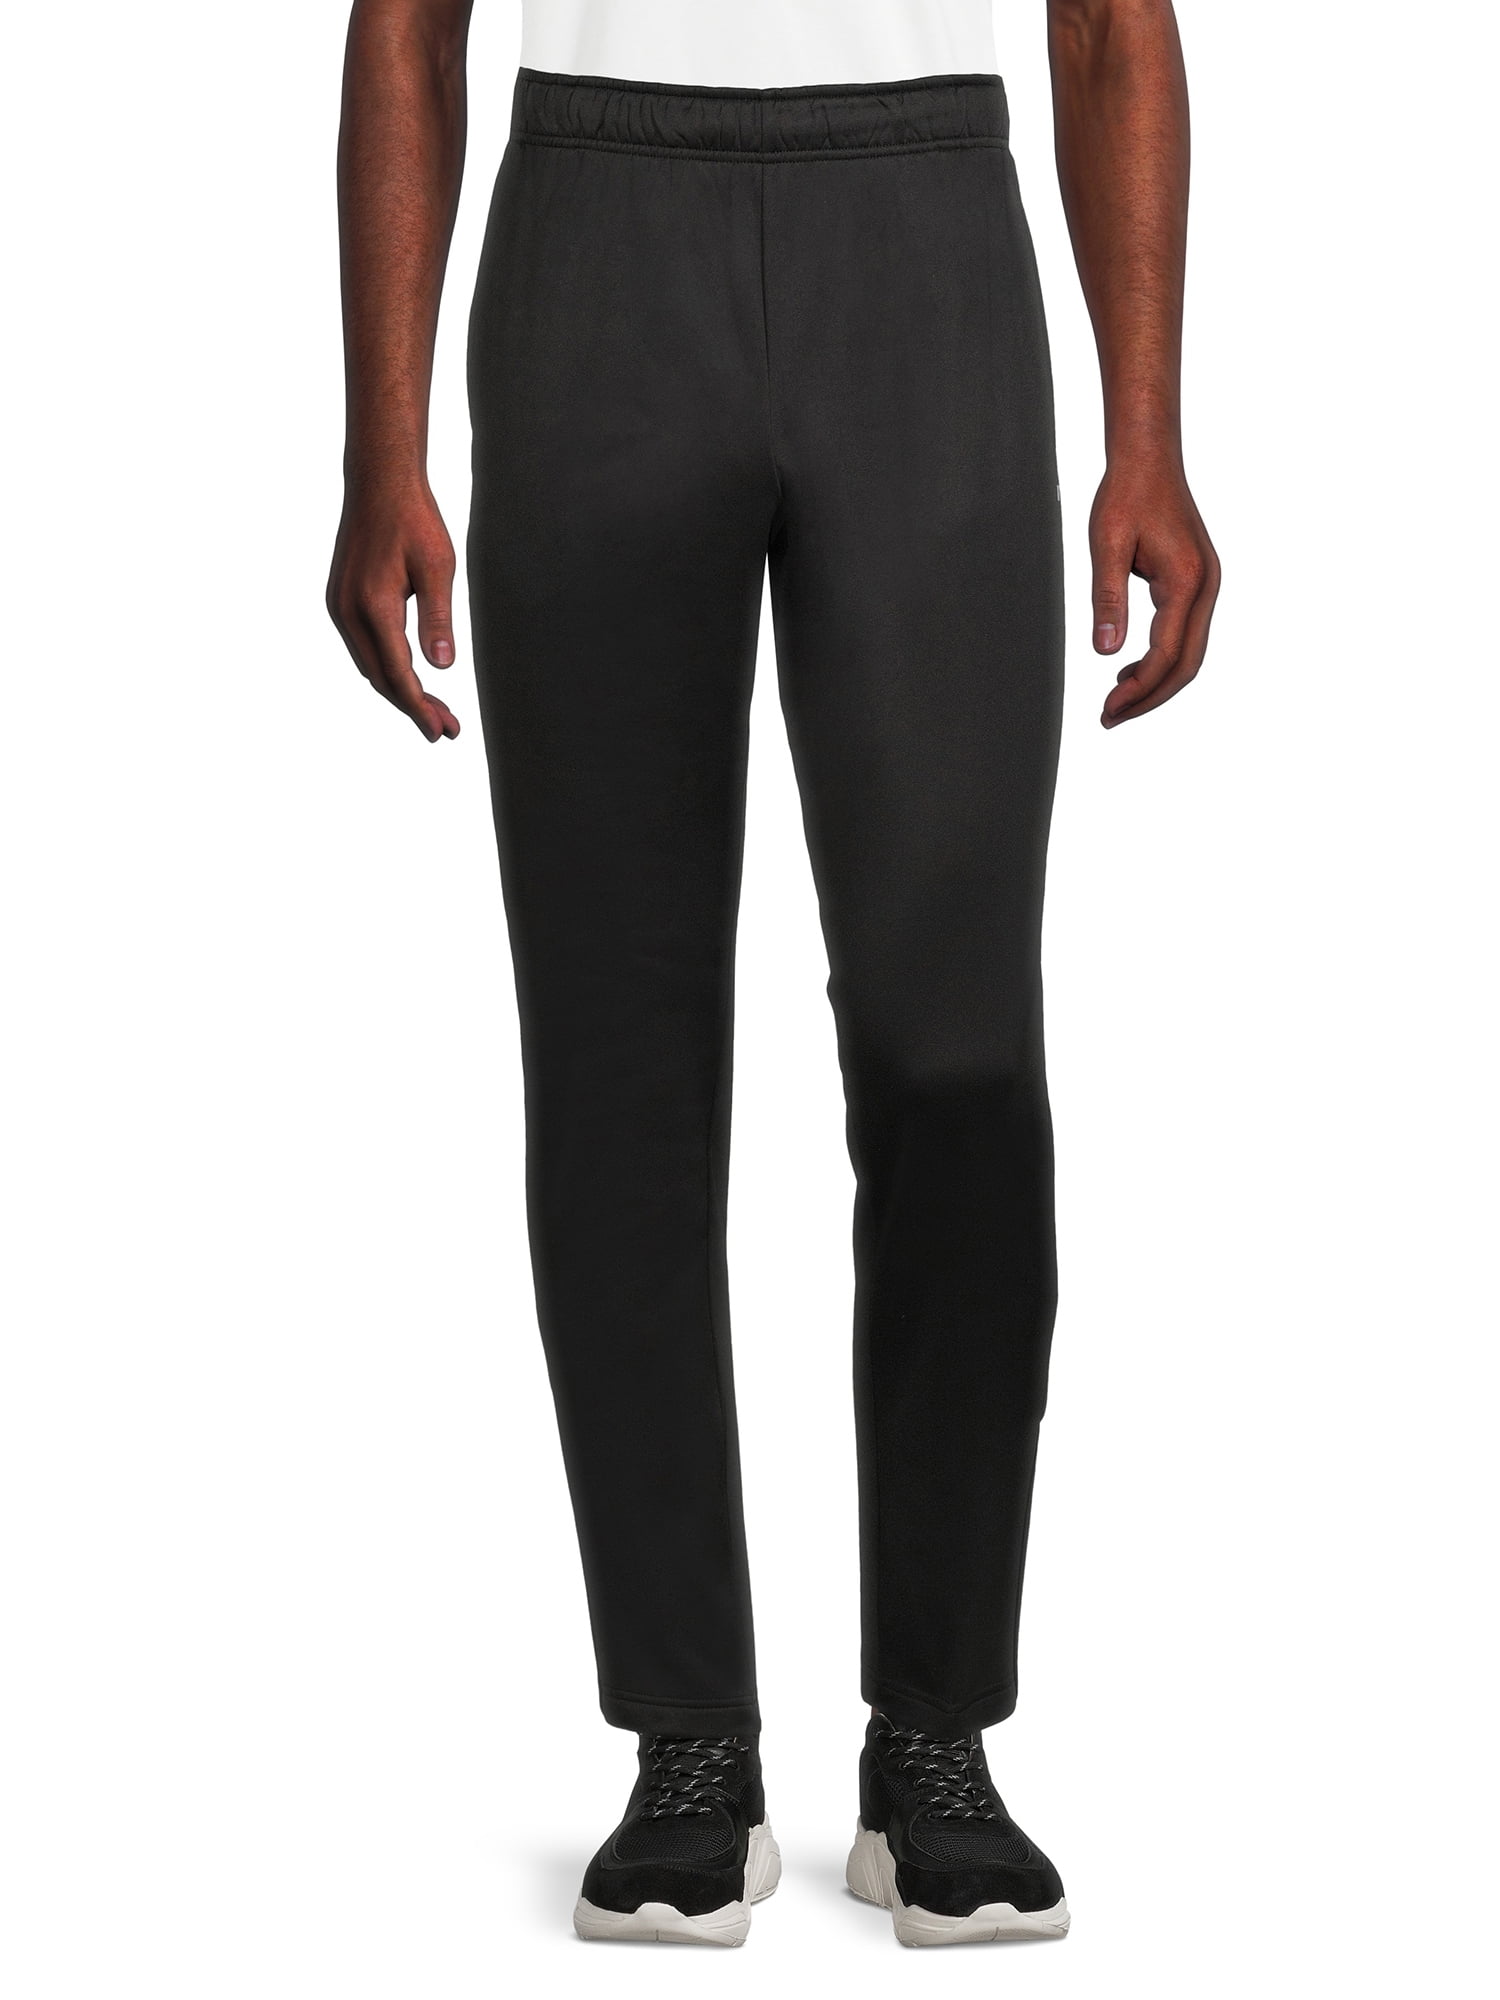 Russell Men’s Tech Fleece Pants, up to size 3XL - Walmart.com